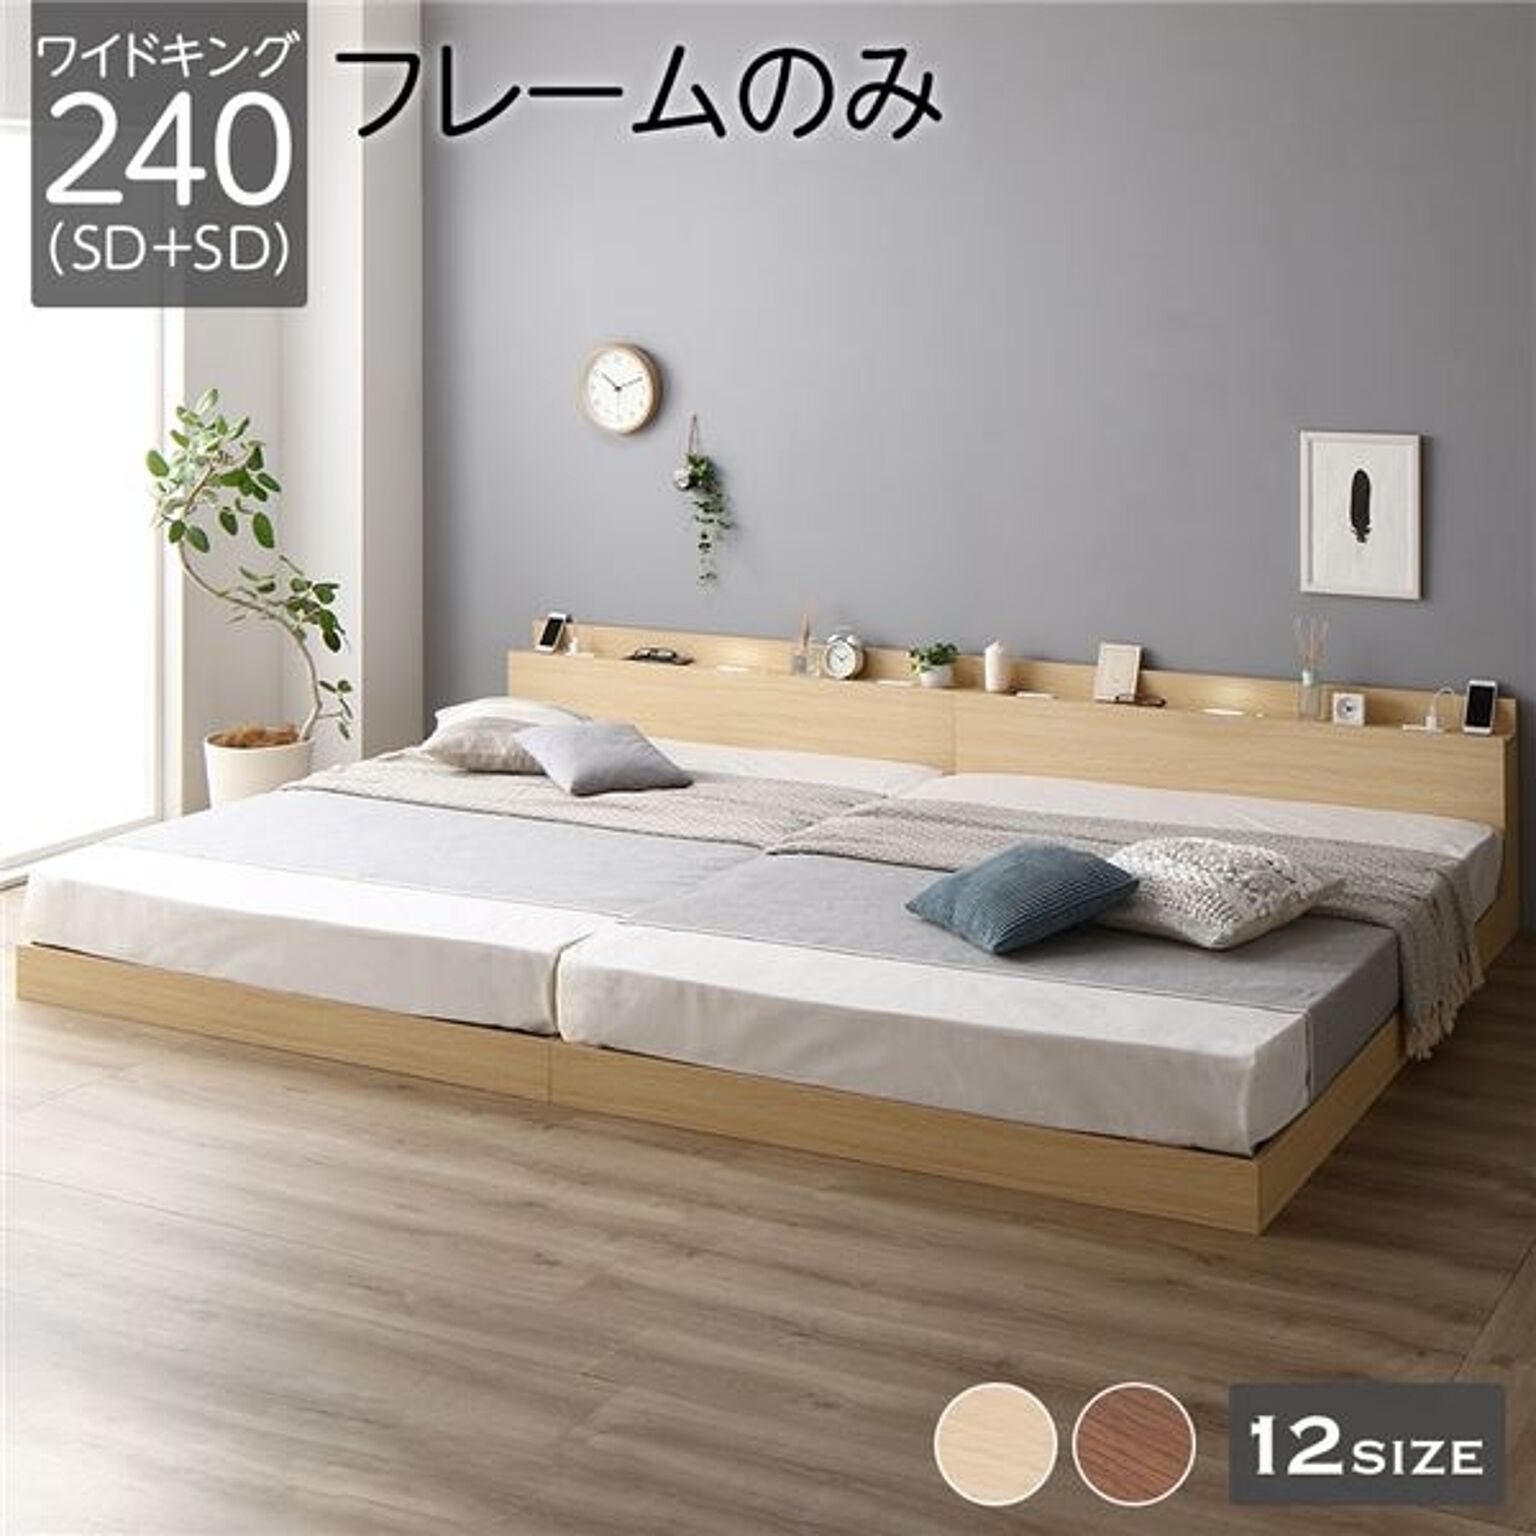 ベッド 低床 連結 ロータイプ すのこ 木製 LED照明付き 棚付き 宮付き コンセント付き シンプル モダン ナチュラル ワイドキング240（SD+SD）  ベッドフレームのみ